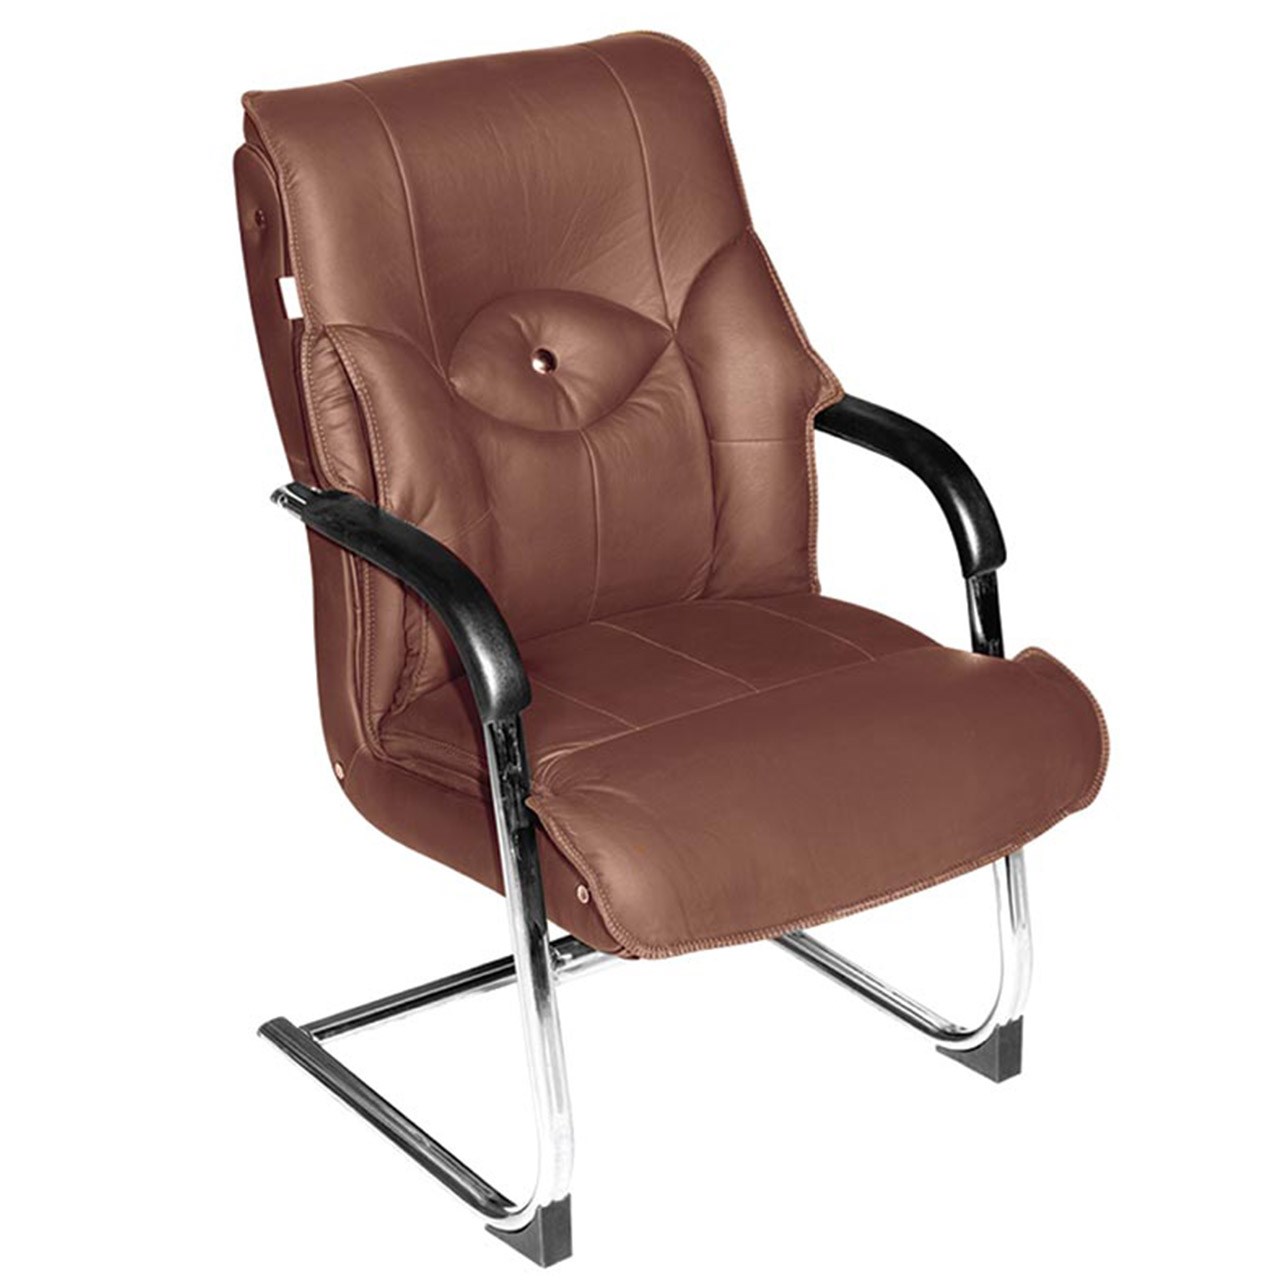 صندلی اداری چرمی نوین سیستم مدل 3010C چرمی